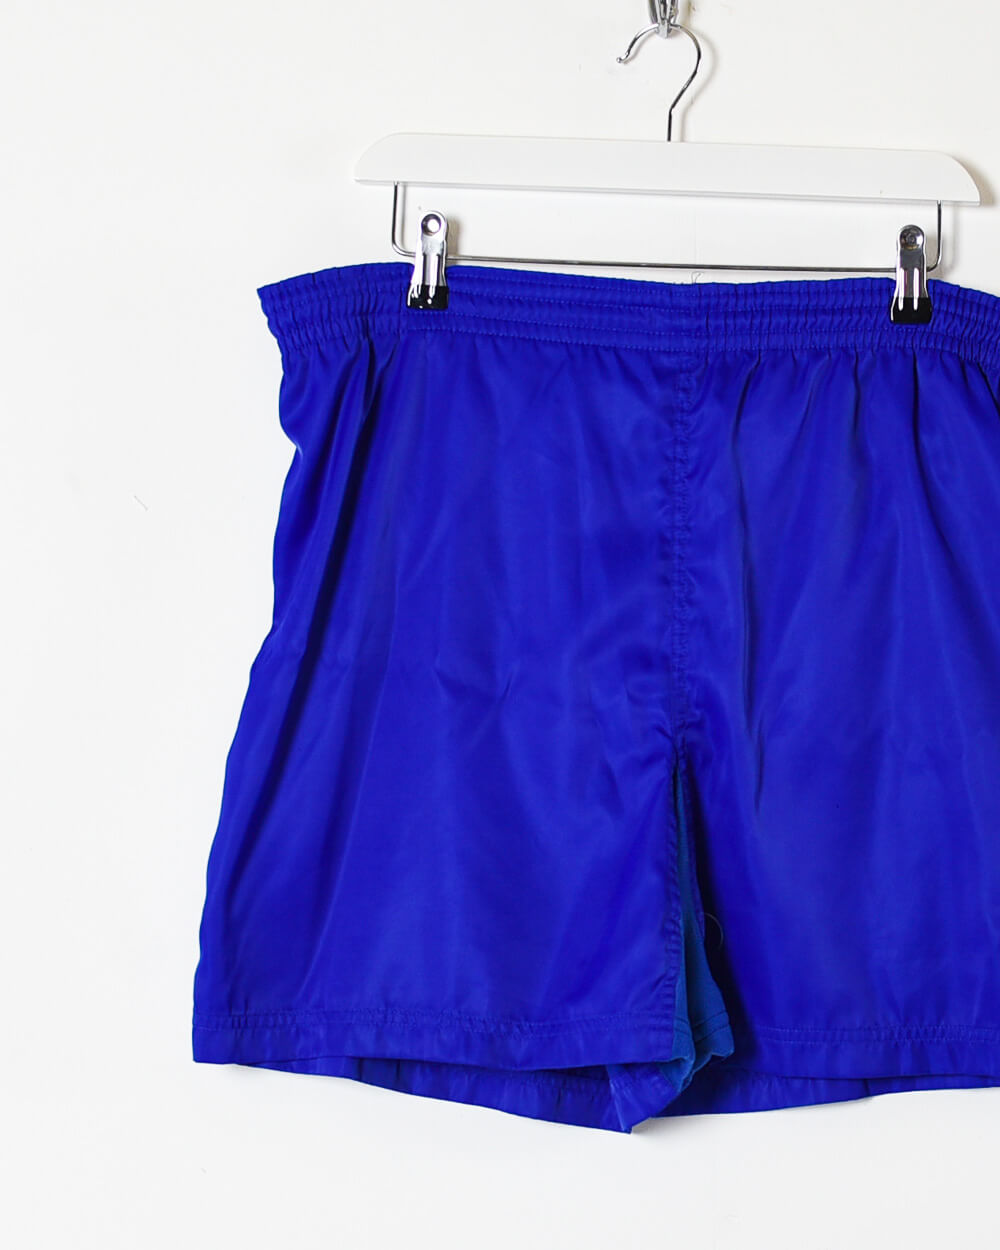 Blue Nike Shorts - Large